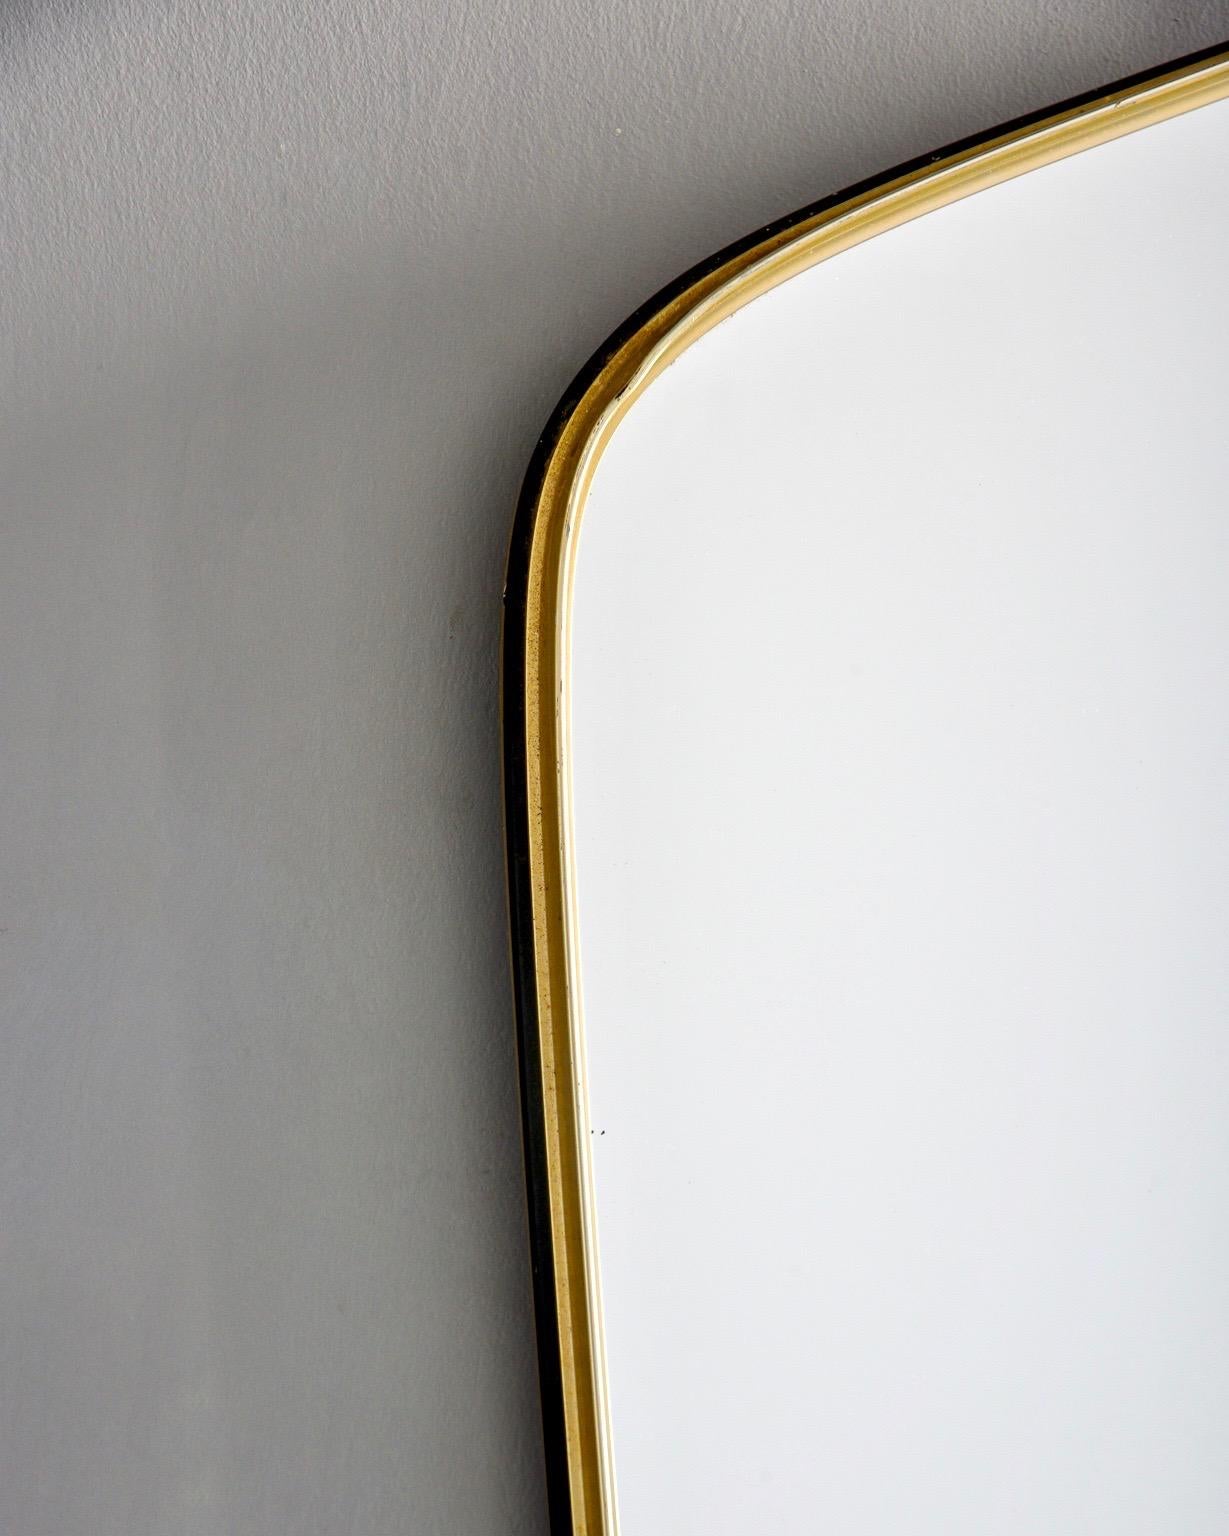 European Narrow Midcentury Gio Ponti Style Brass Framed Mirror